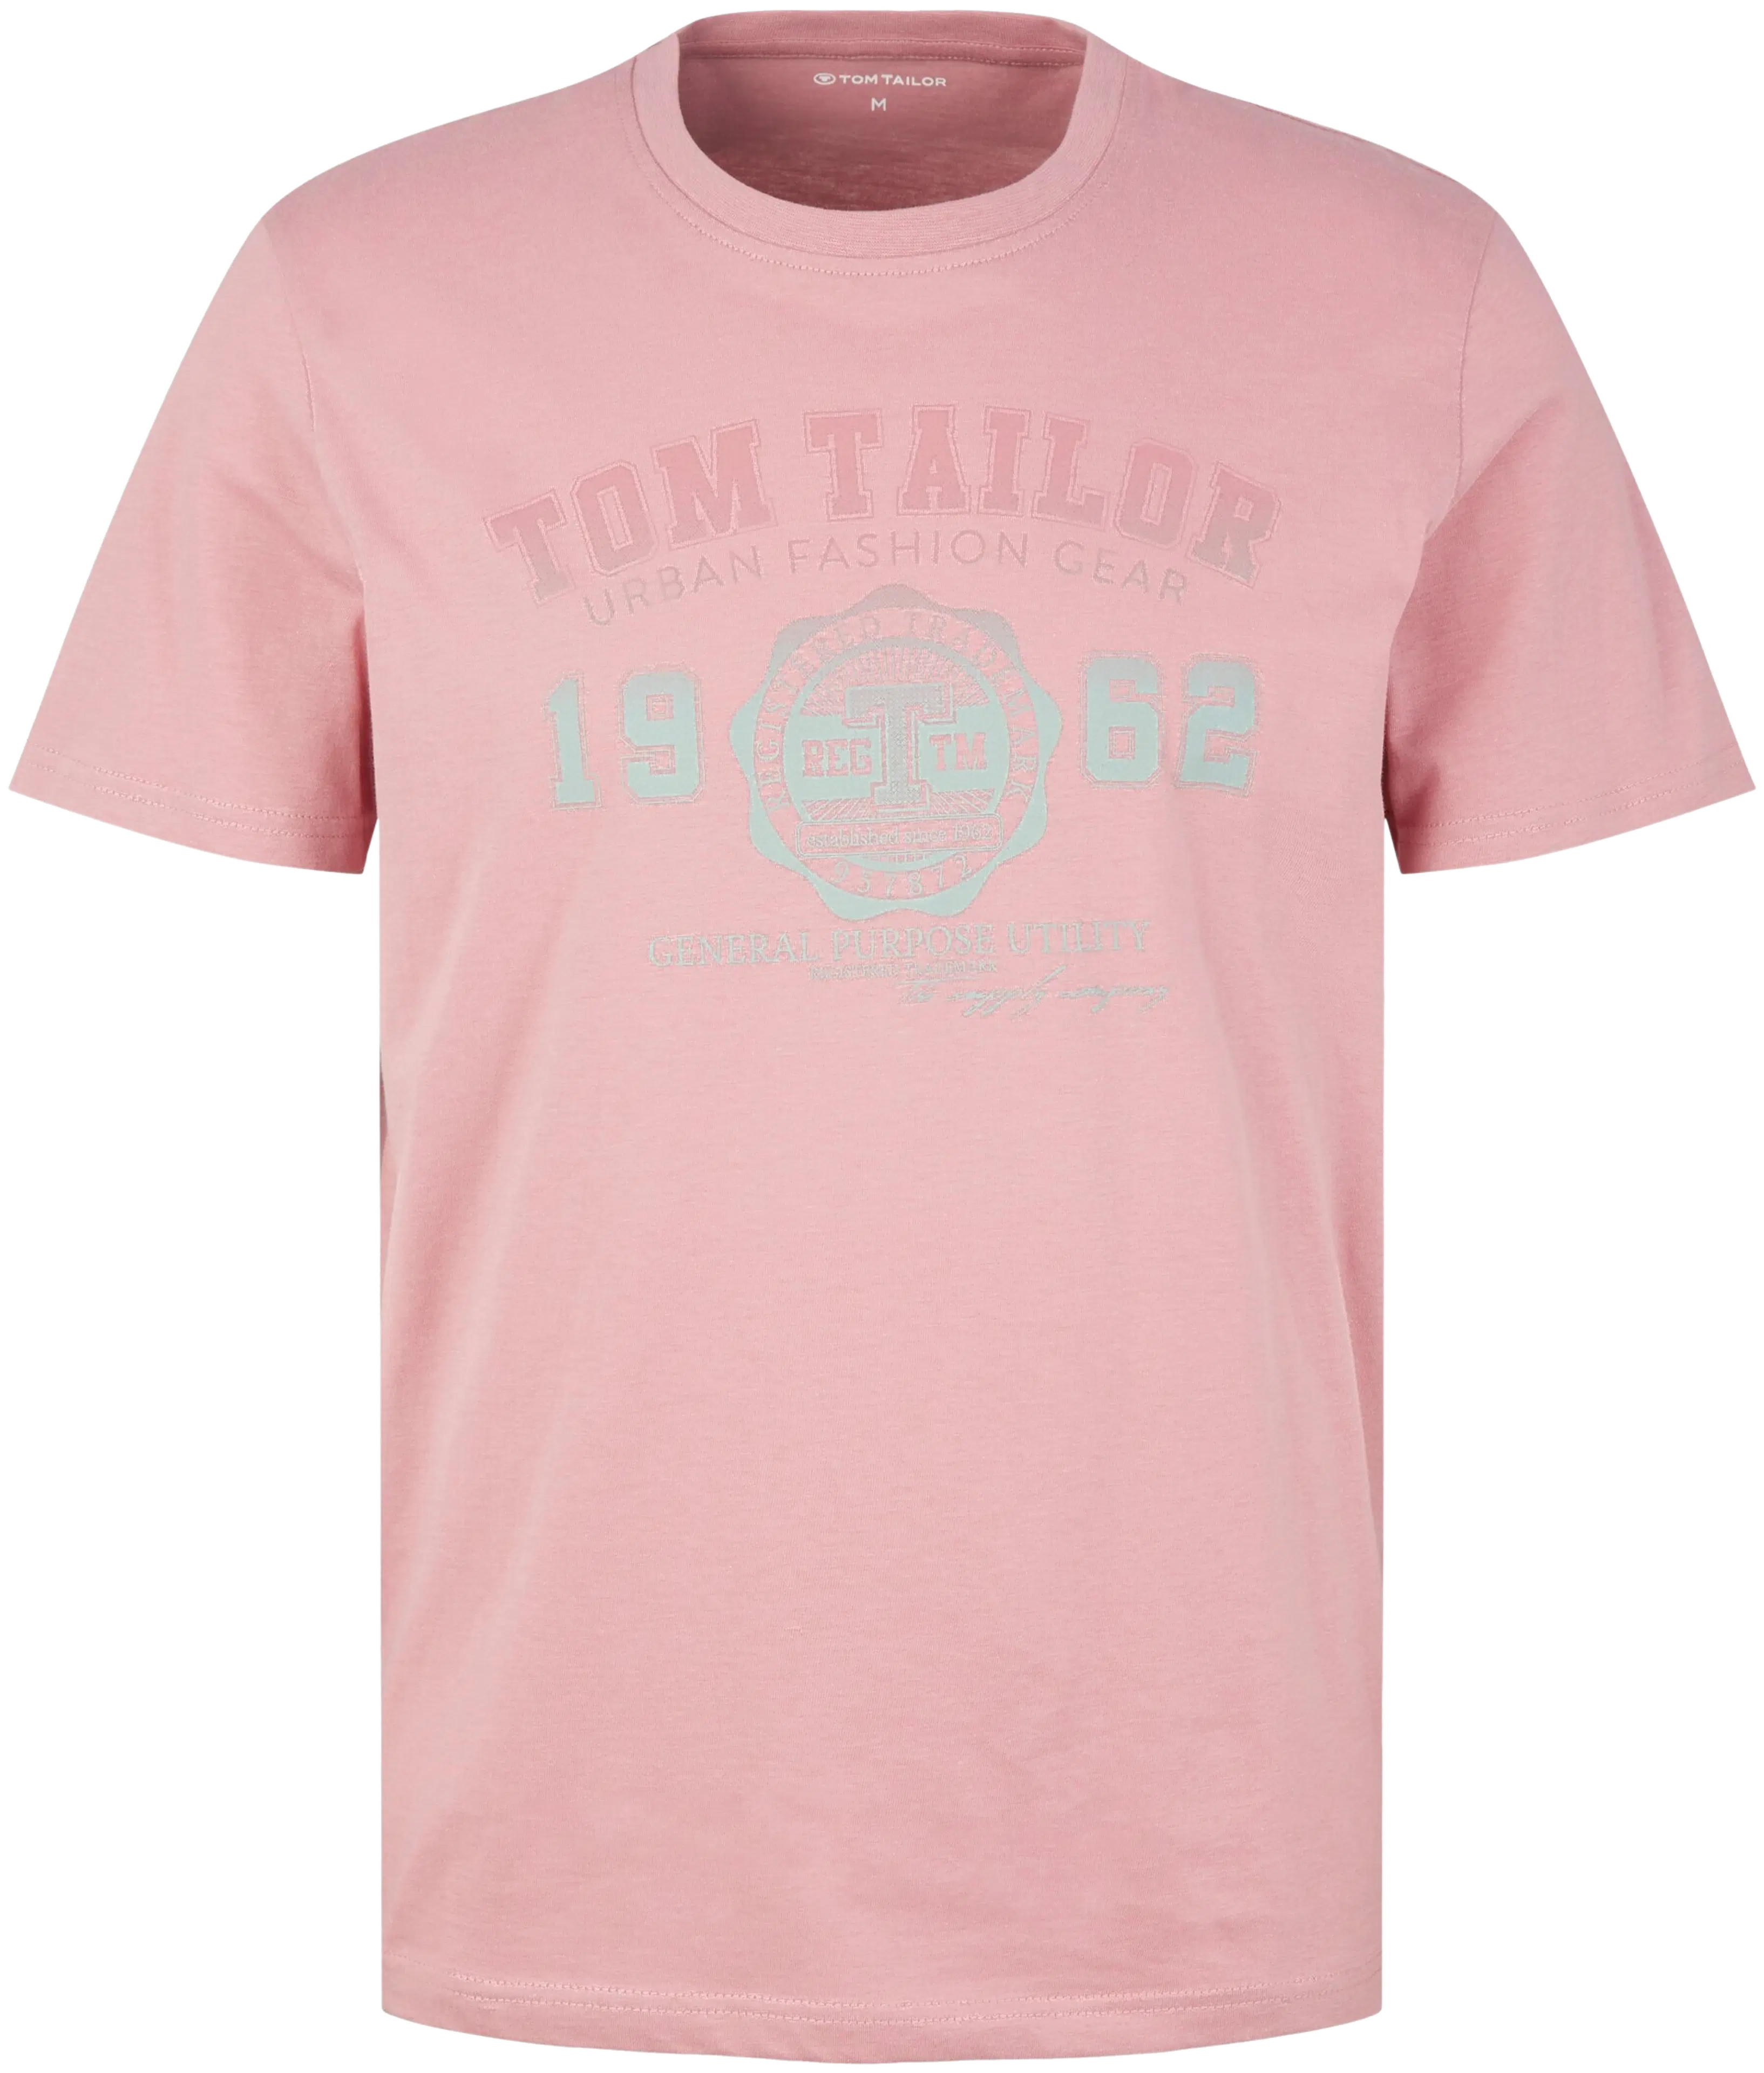 Tom Tailor t-paita